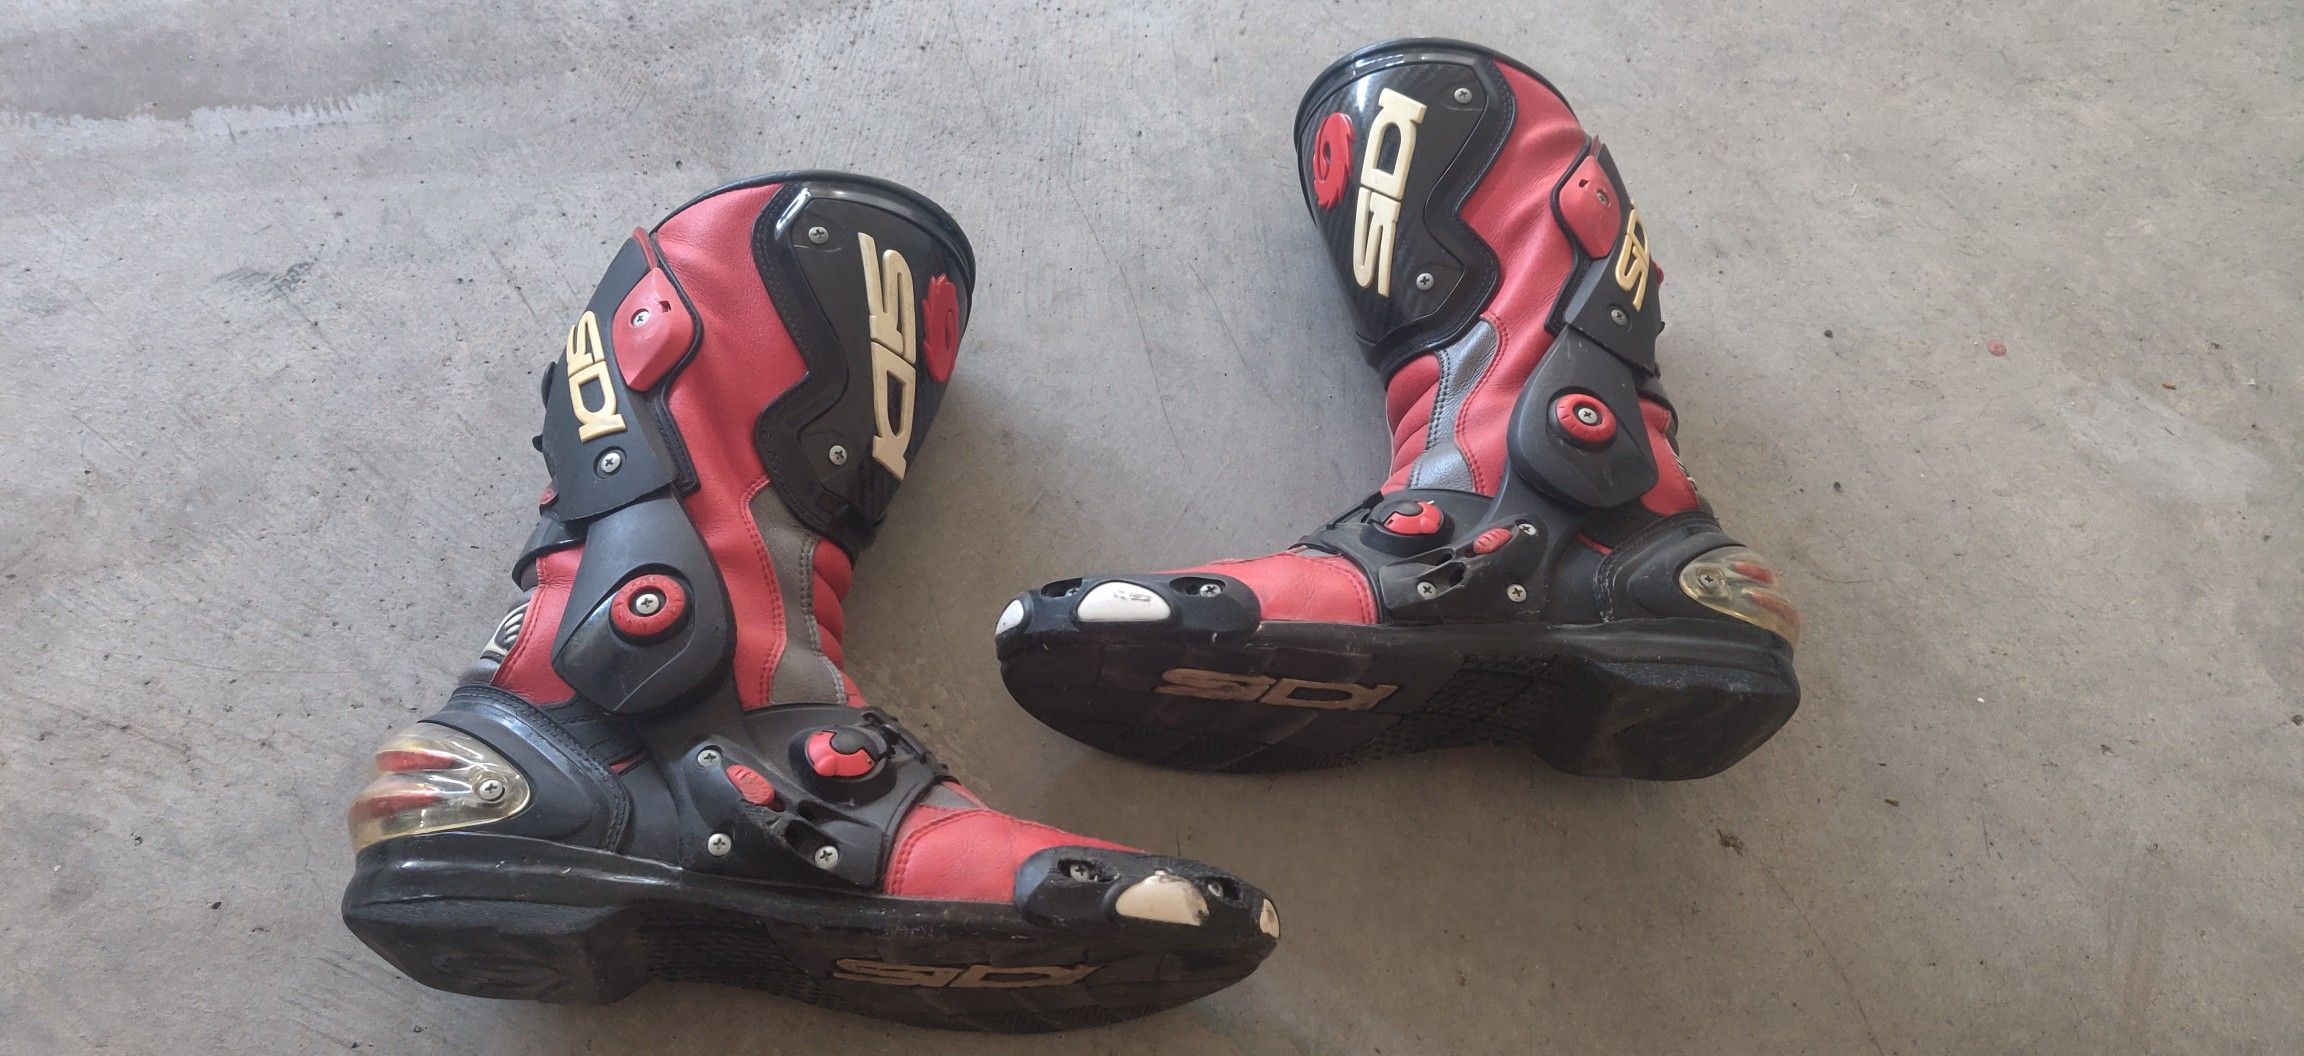 SIDI Red Vertigo Corsa Motorcycle Boots size 11.5